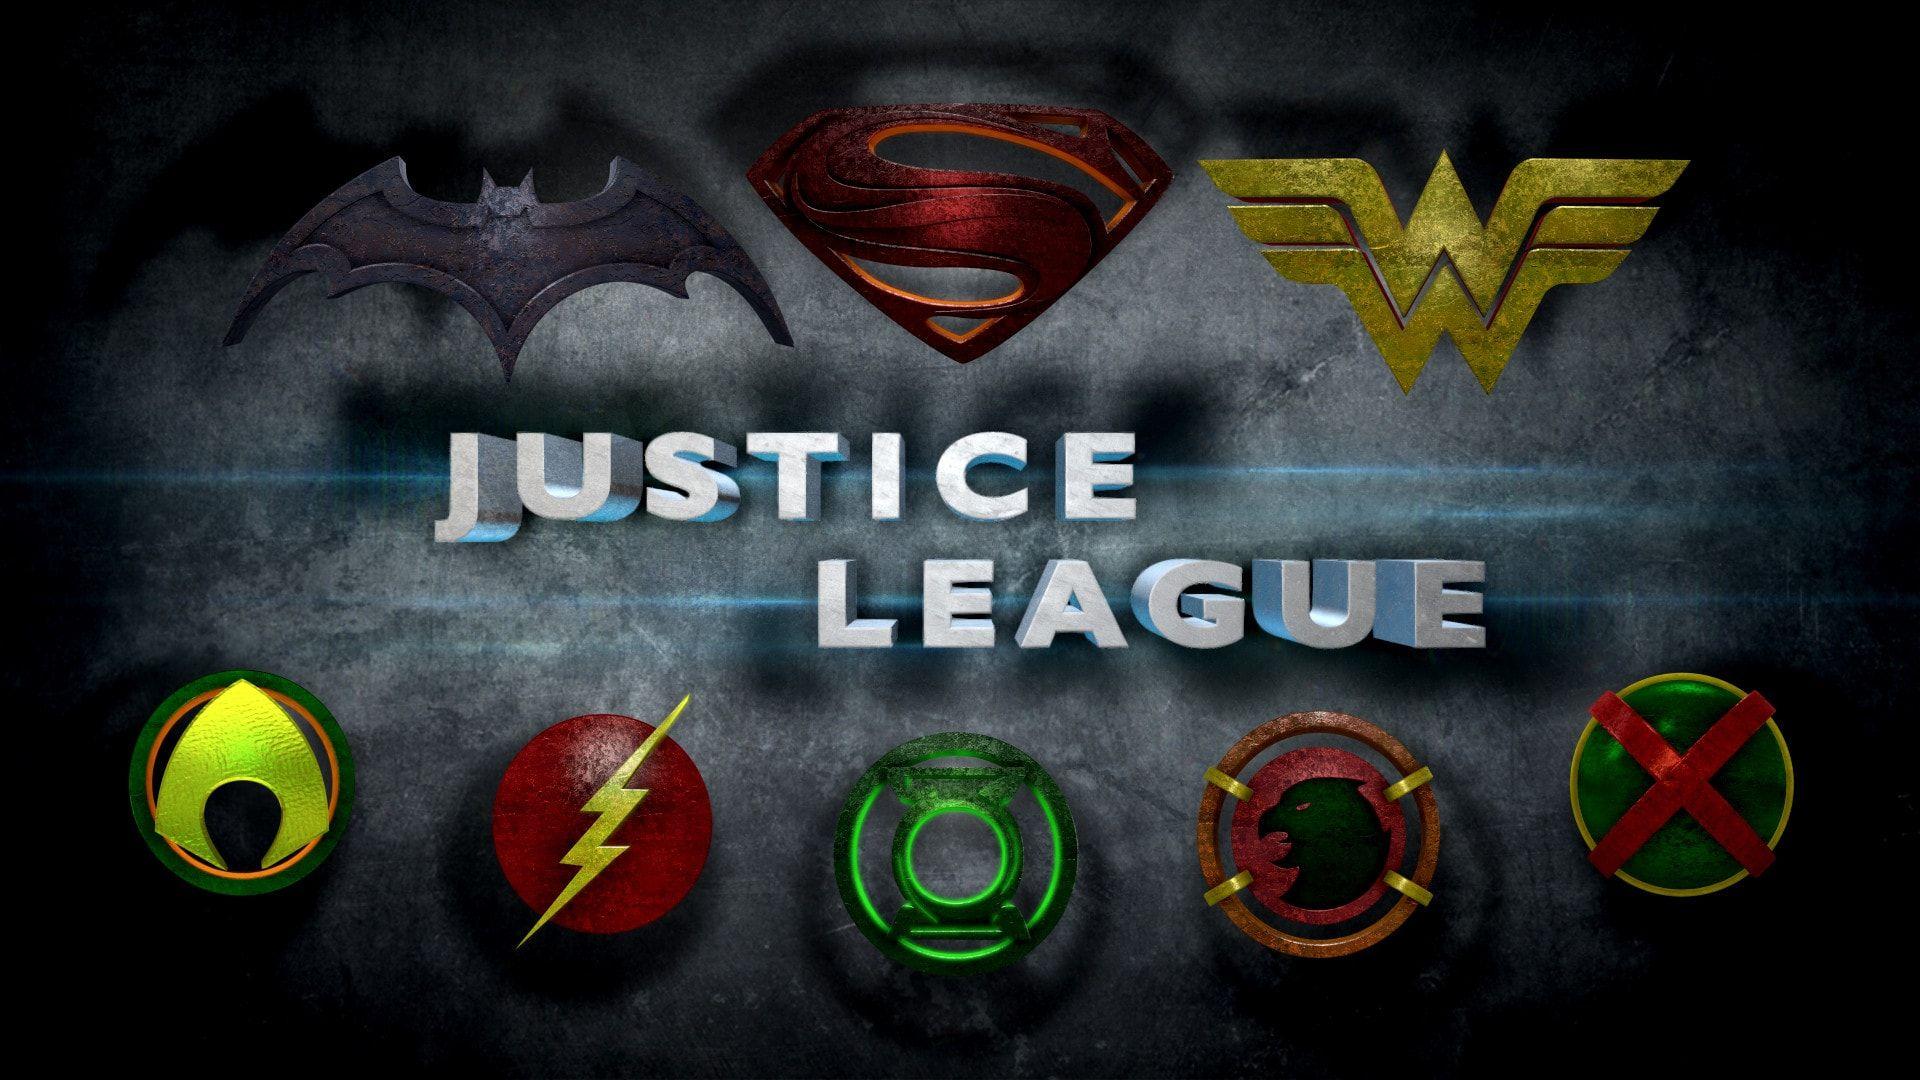 Unique Justice League 2017 Movie Wallpaper For Desktop